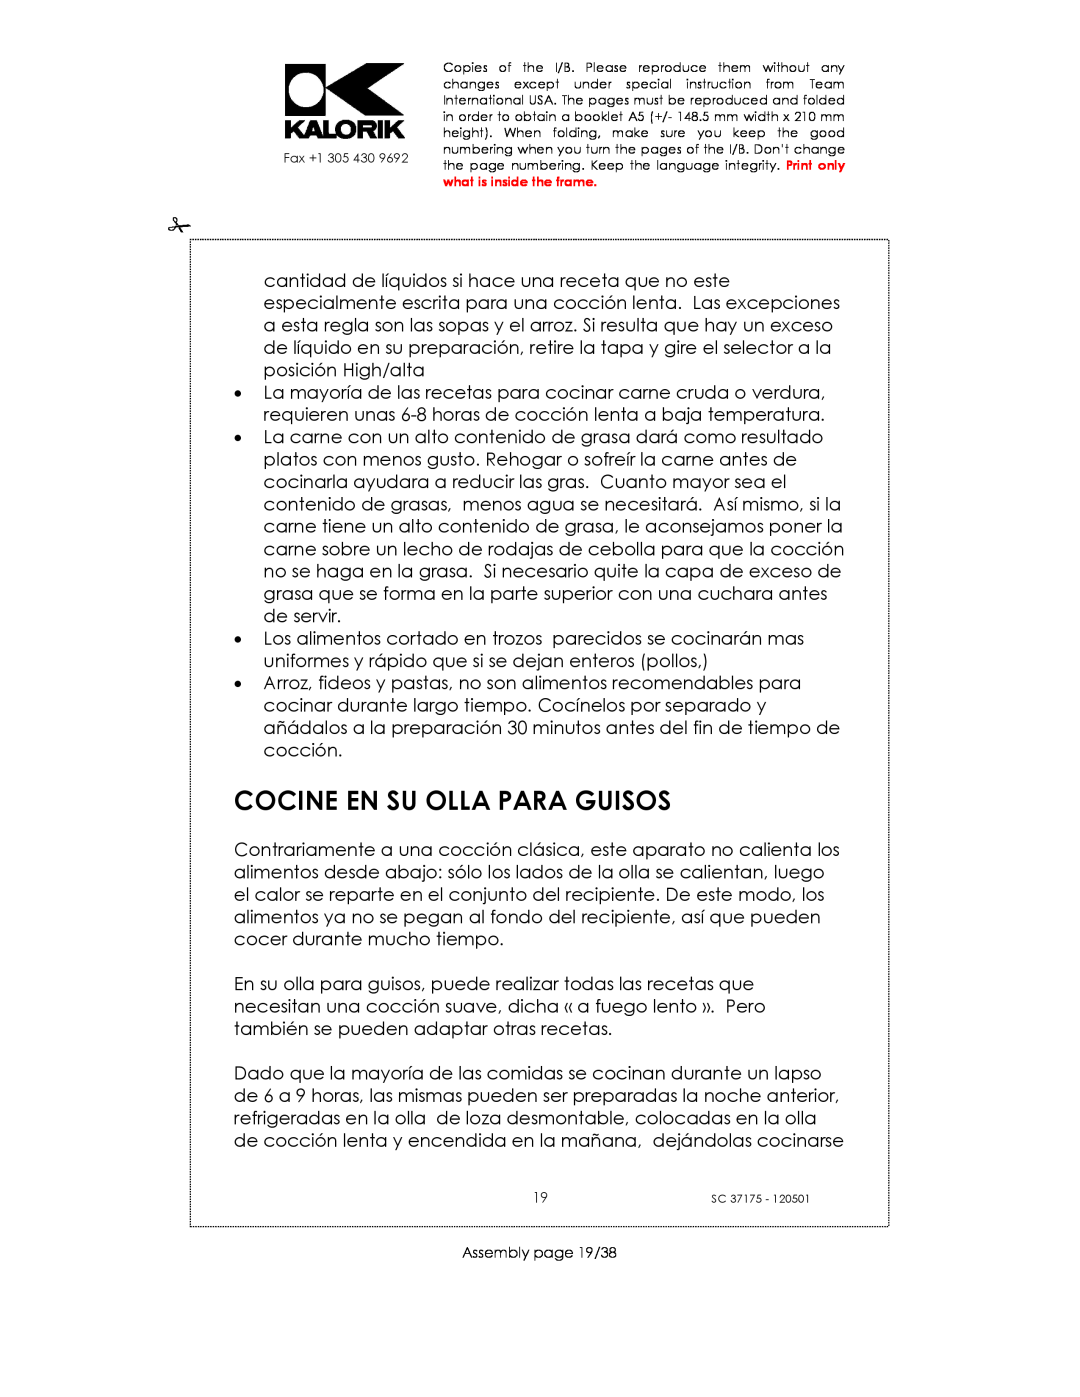 Kalorik SC 37175 manual Cocine En Su Olla Para Guisos, Assembly page 19/38 